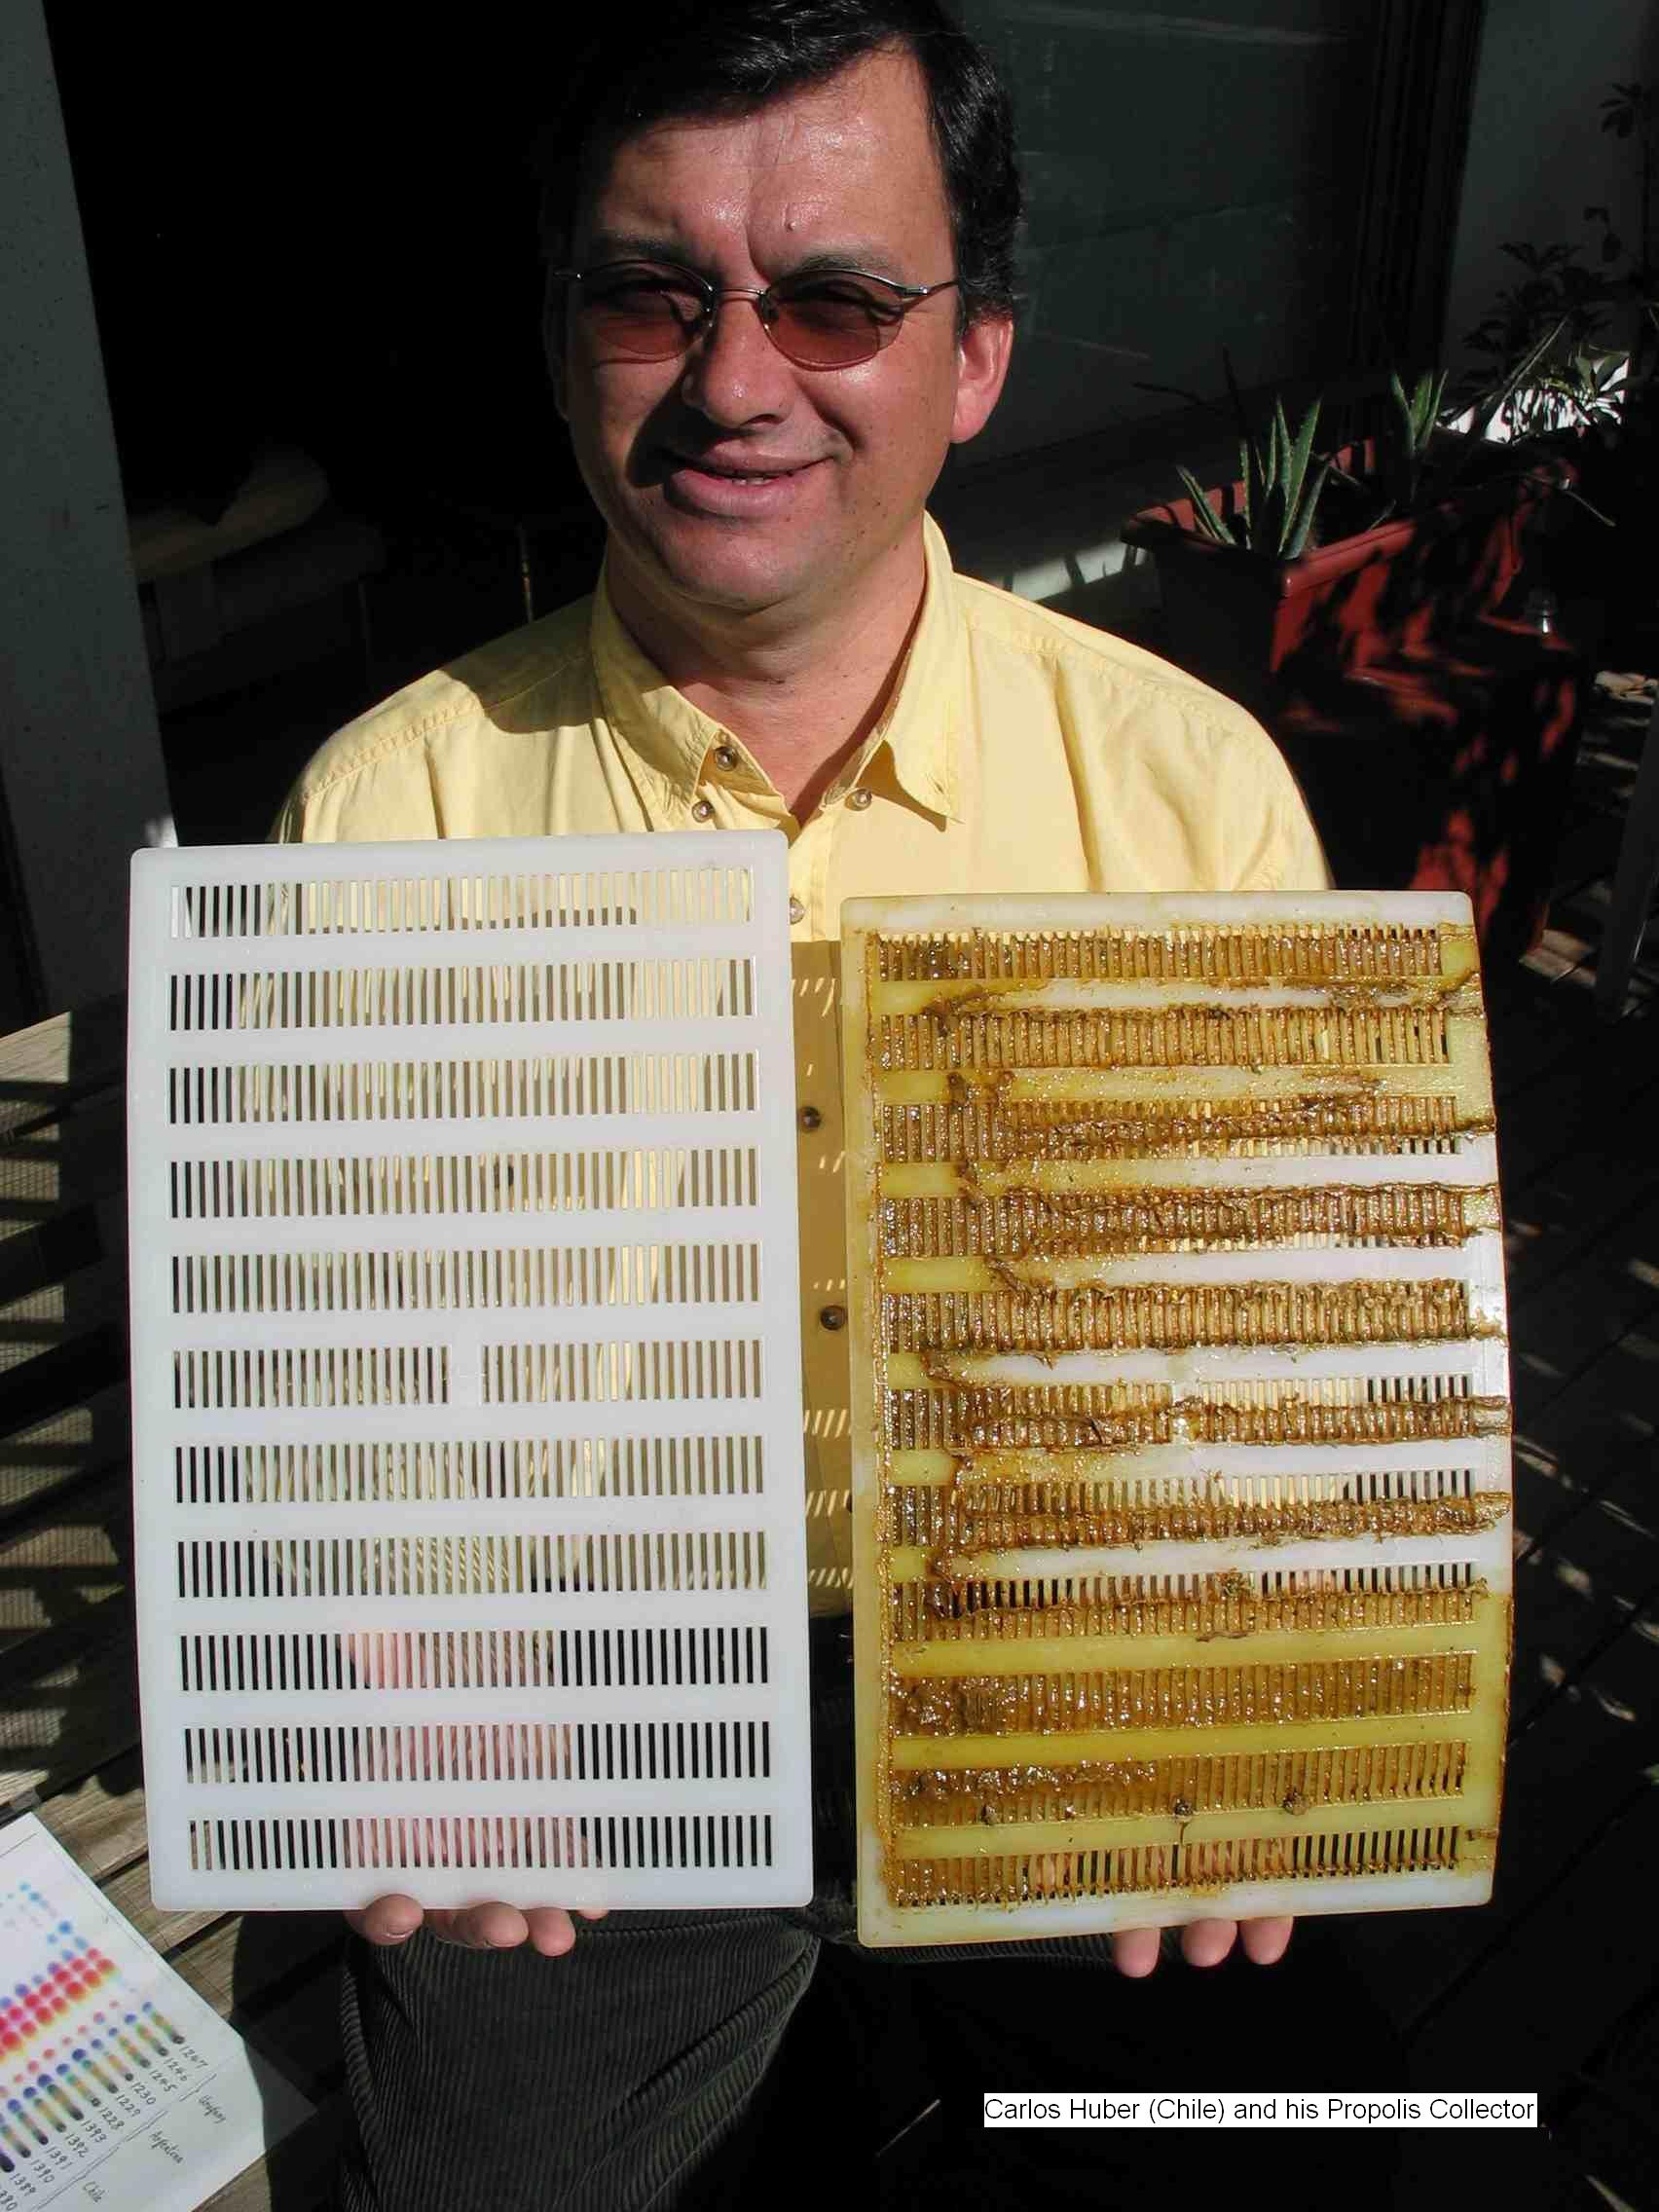 Carlos and his Chilean propolis collector